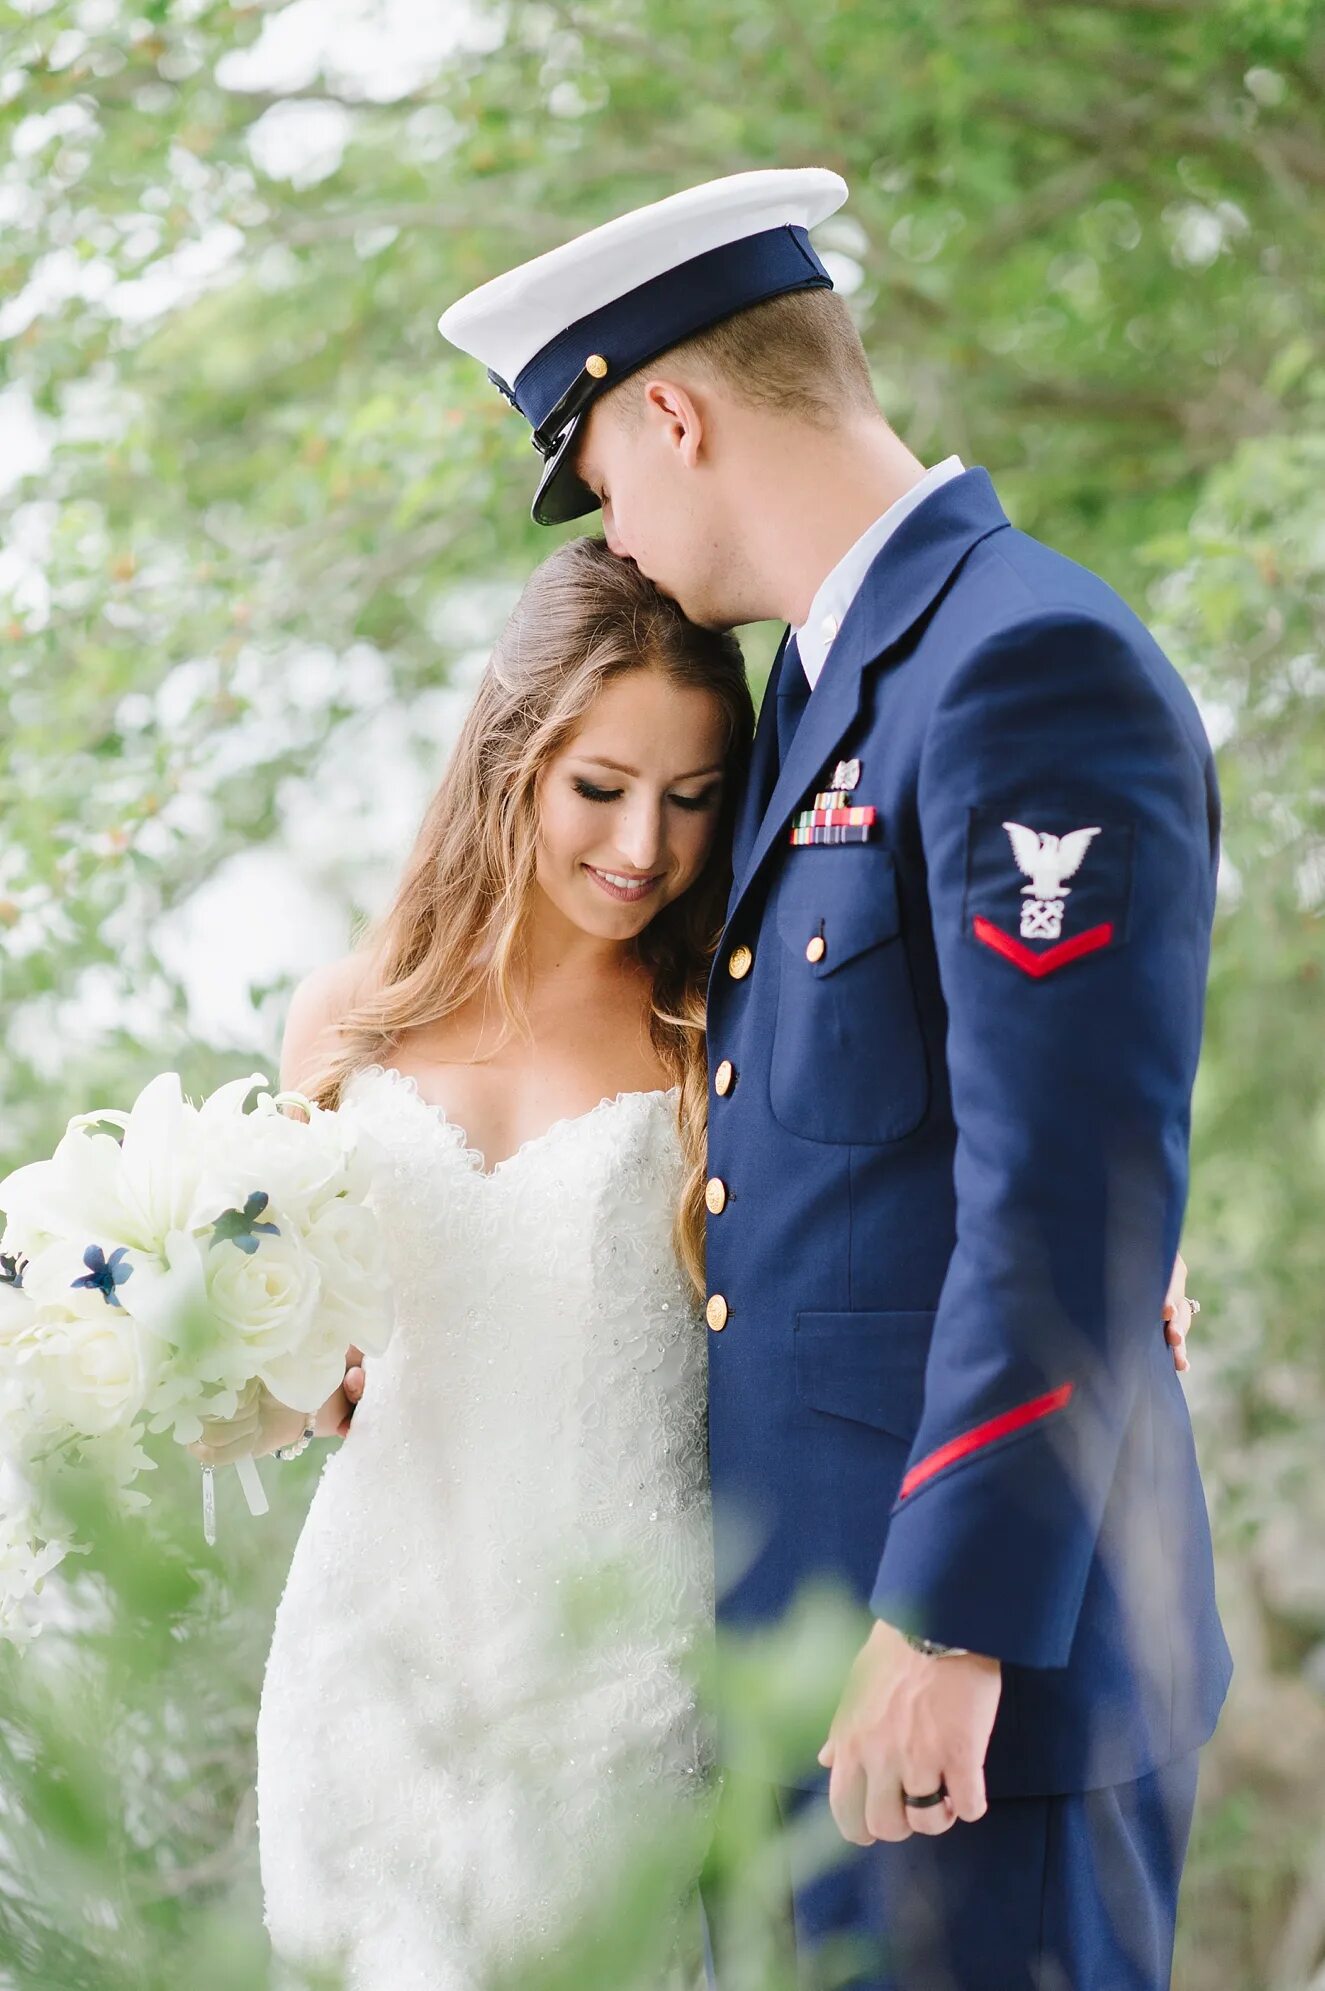 Свадьба в военном стиле. Свадебная фотосессия в военной форме. Жених в военной форме. Свадьба офицера.